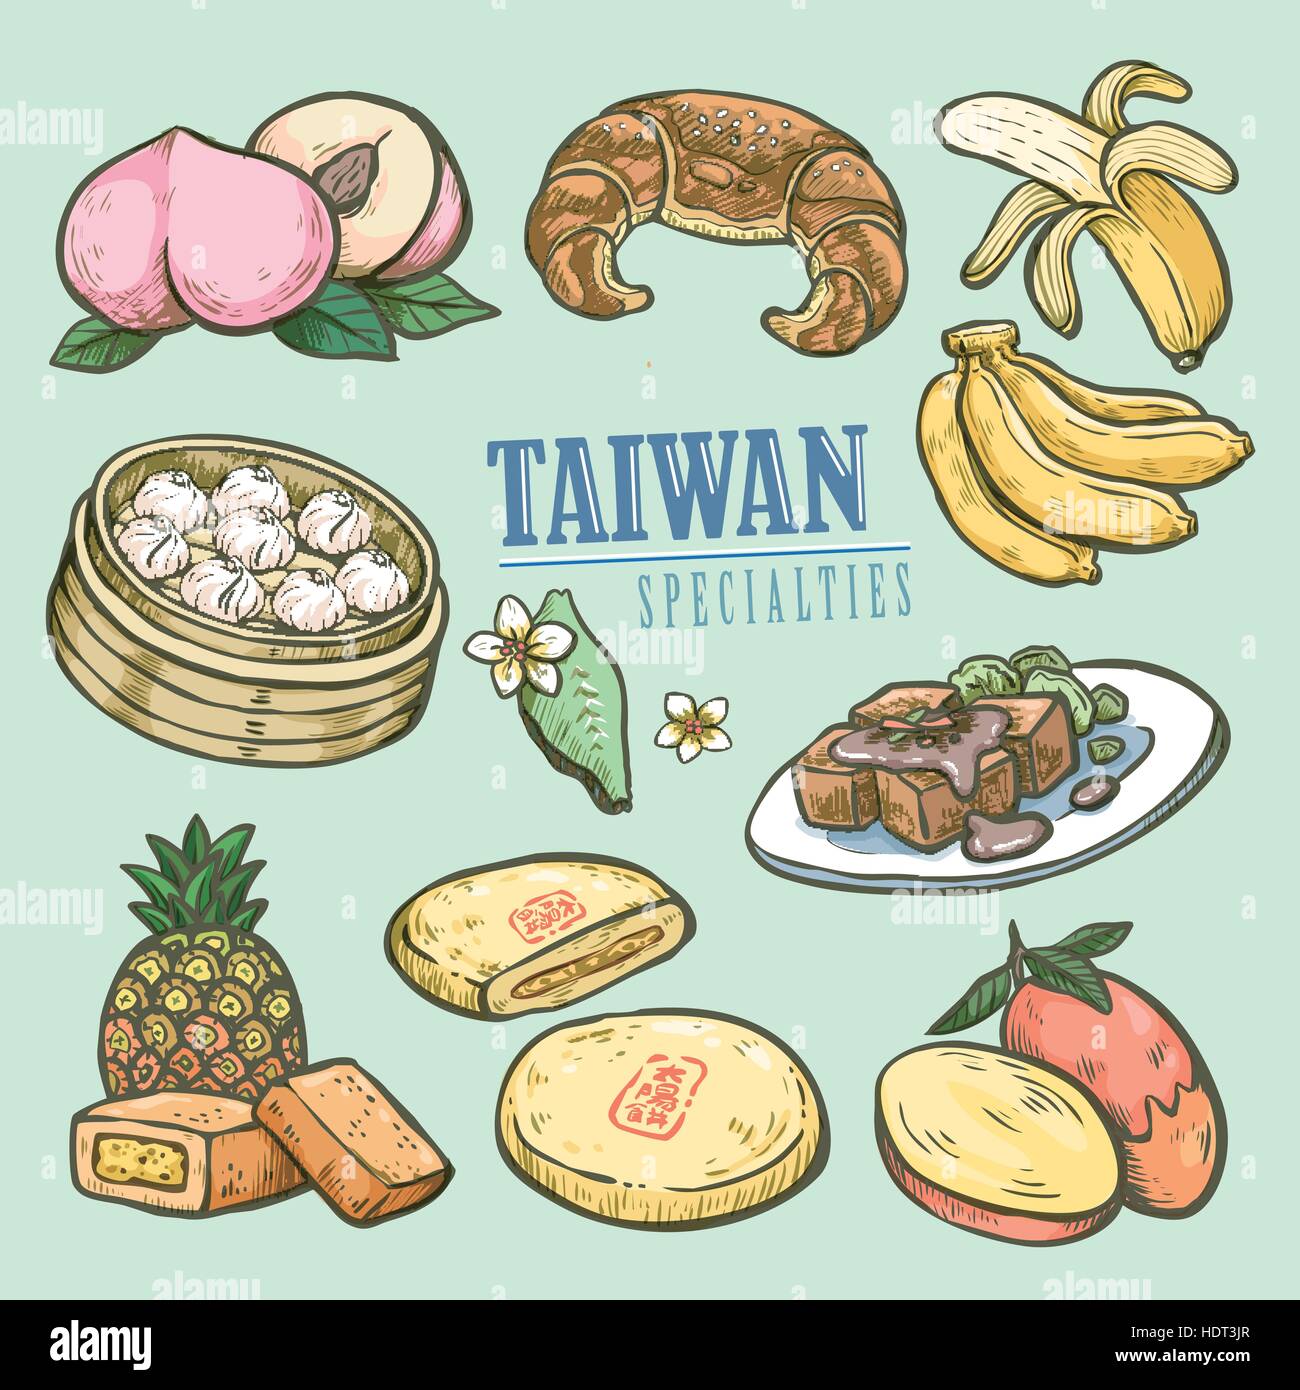 Des spécialités exquises Taiwan collection dans un style dessiné à la main - le mot sur la gâteau est son nom chinois Illustration de Vecteur